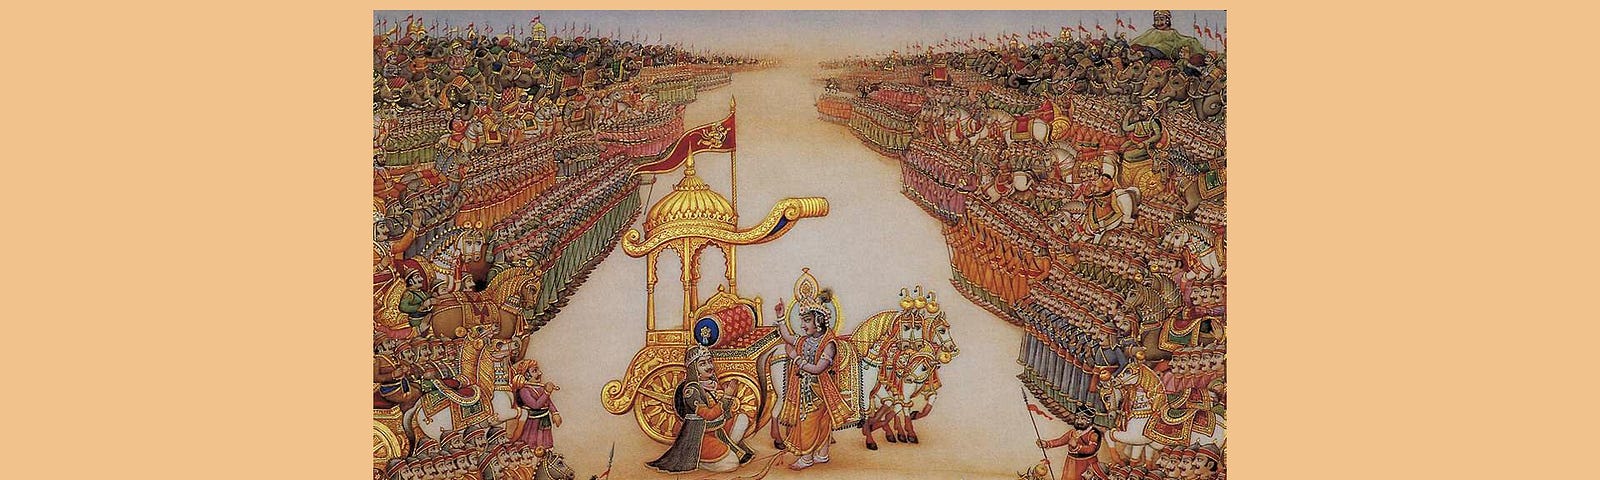 Krishna narrating Bhagwad Gita to Arjun